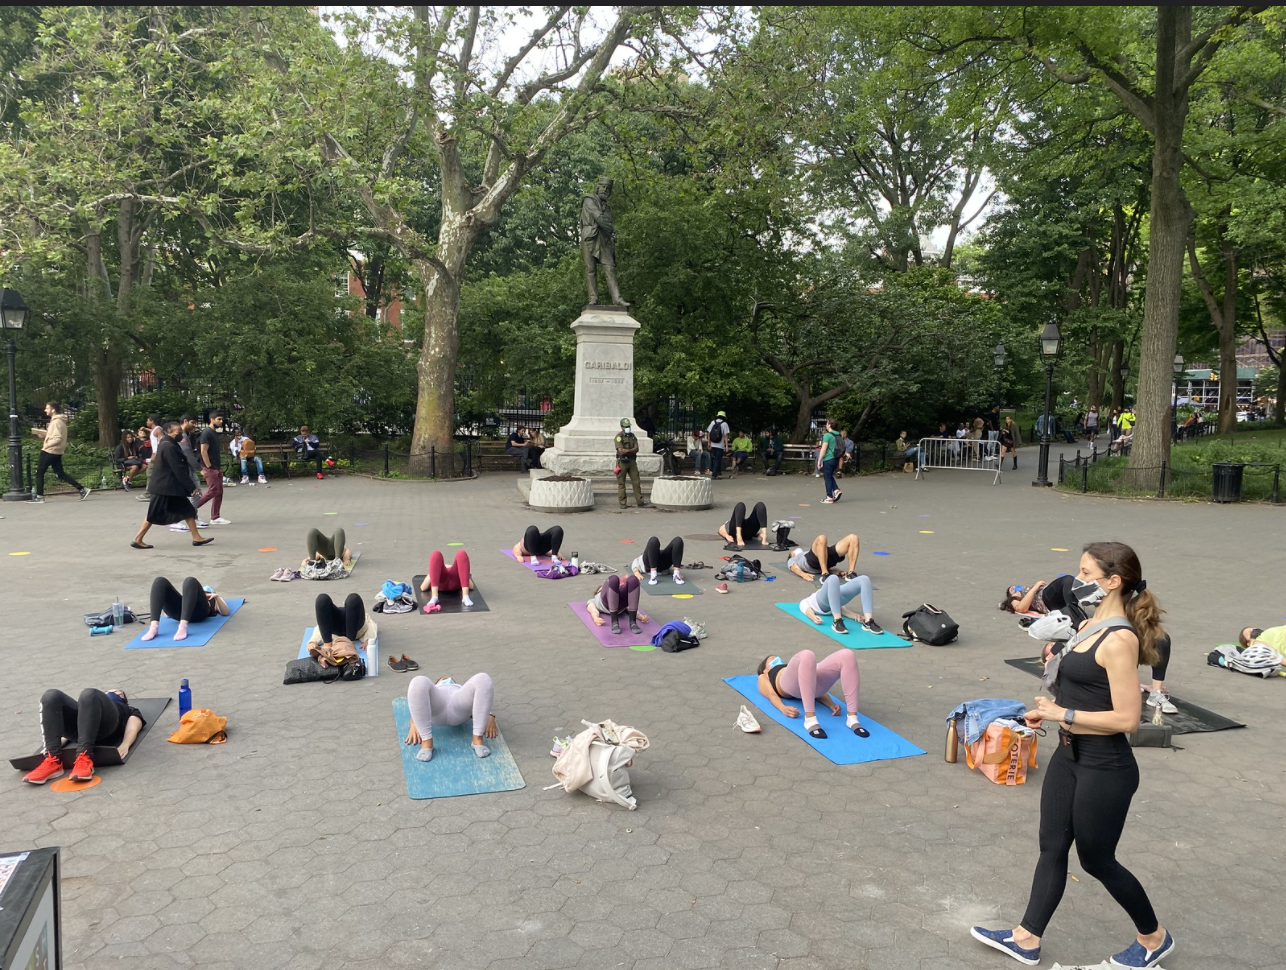 people exercising in garibaldi plaza on yoga mats